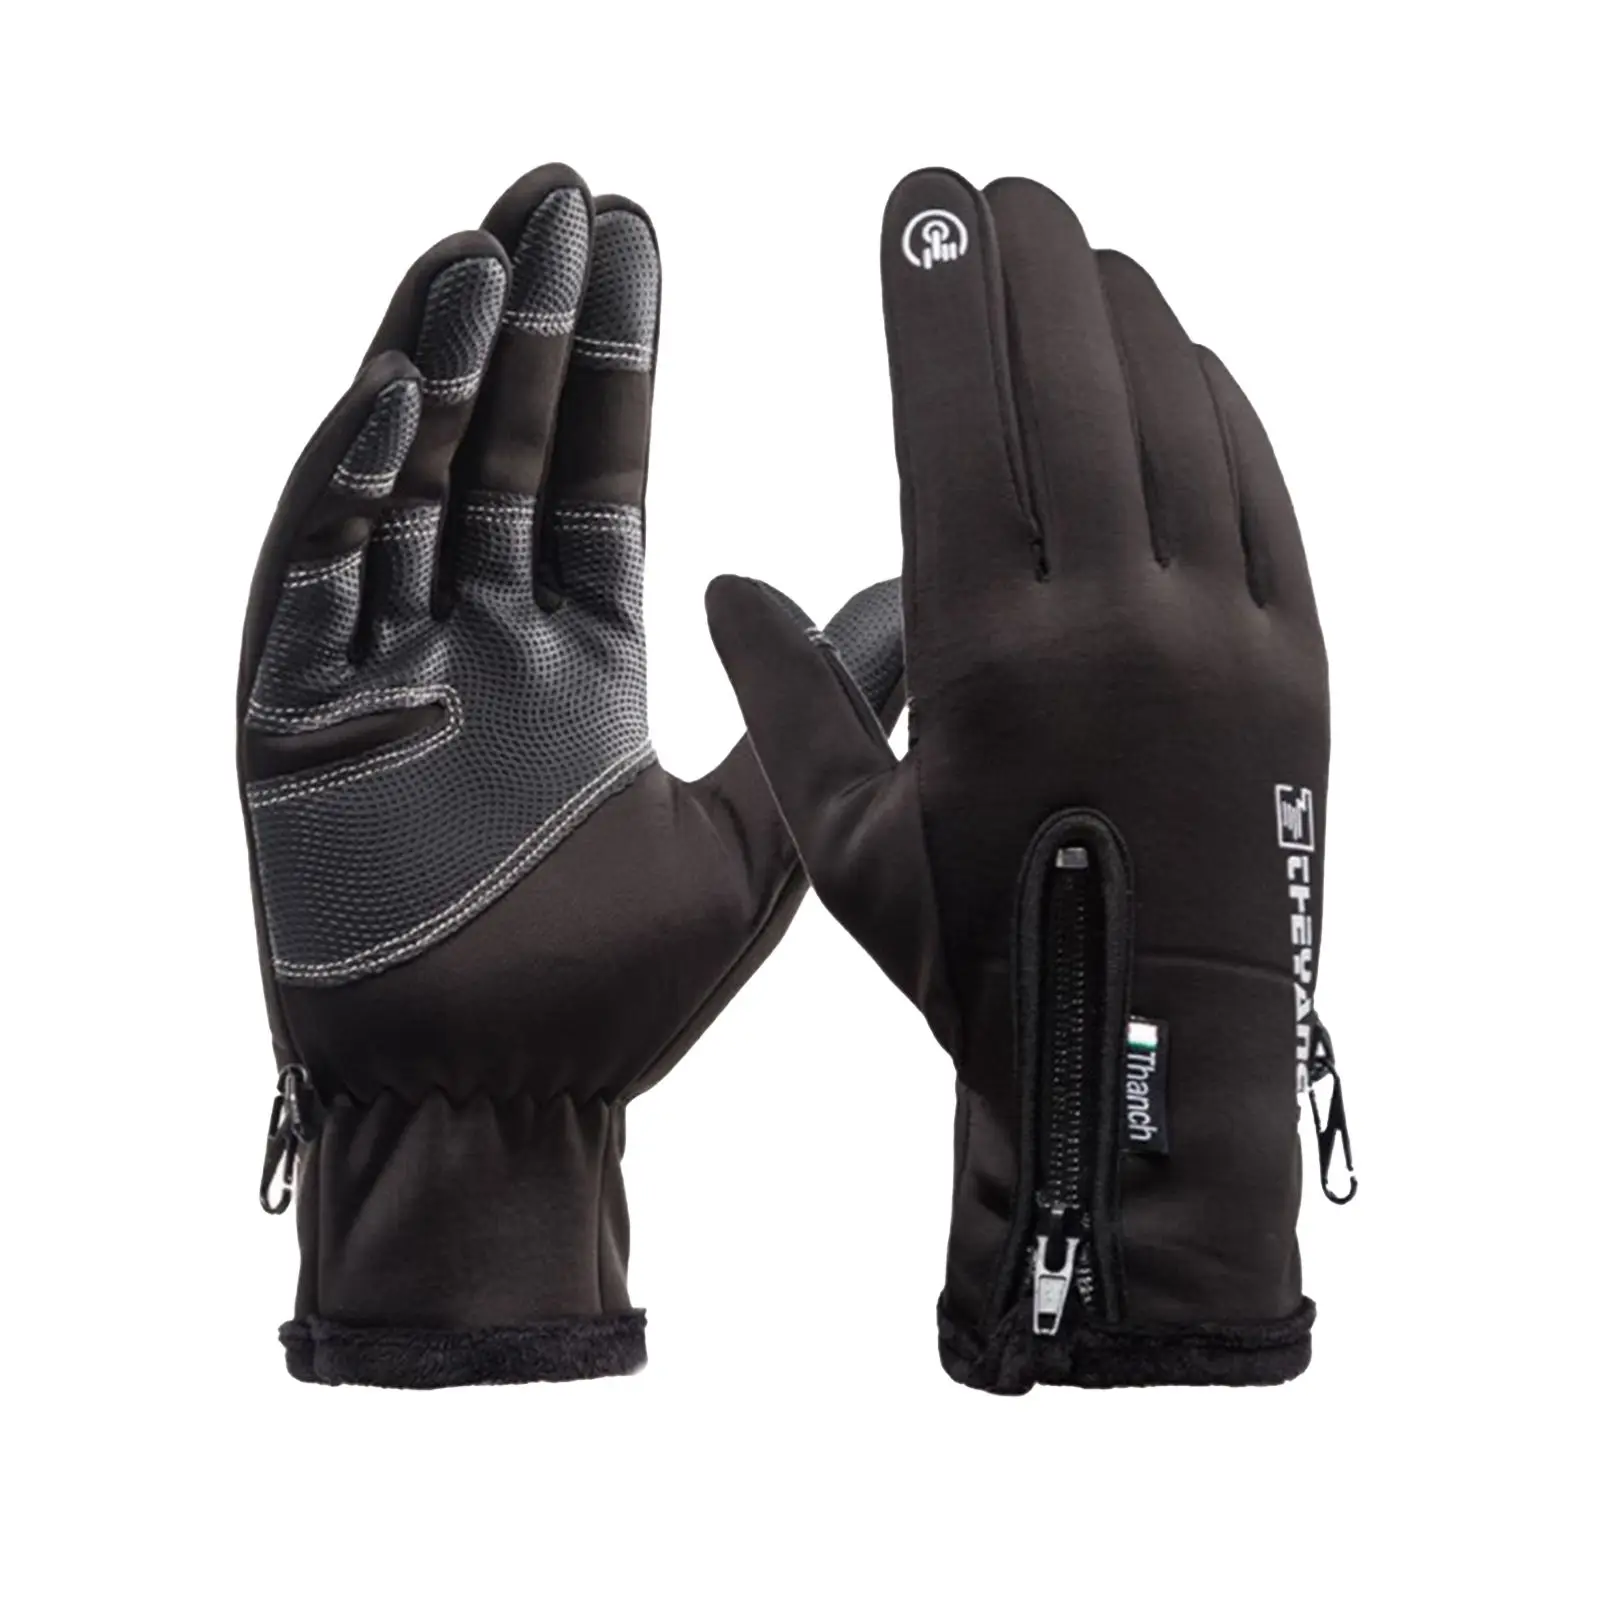 Fleece Lined Motorcycle Gloves Warmer Warm Outdoor Touch Screen Waterproof 